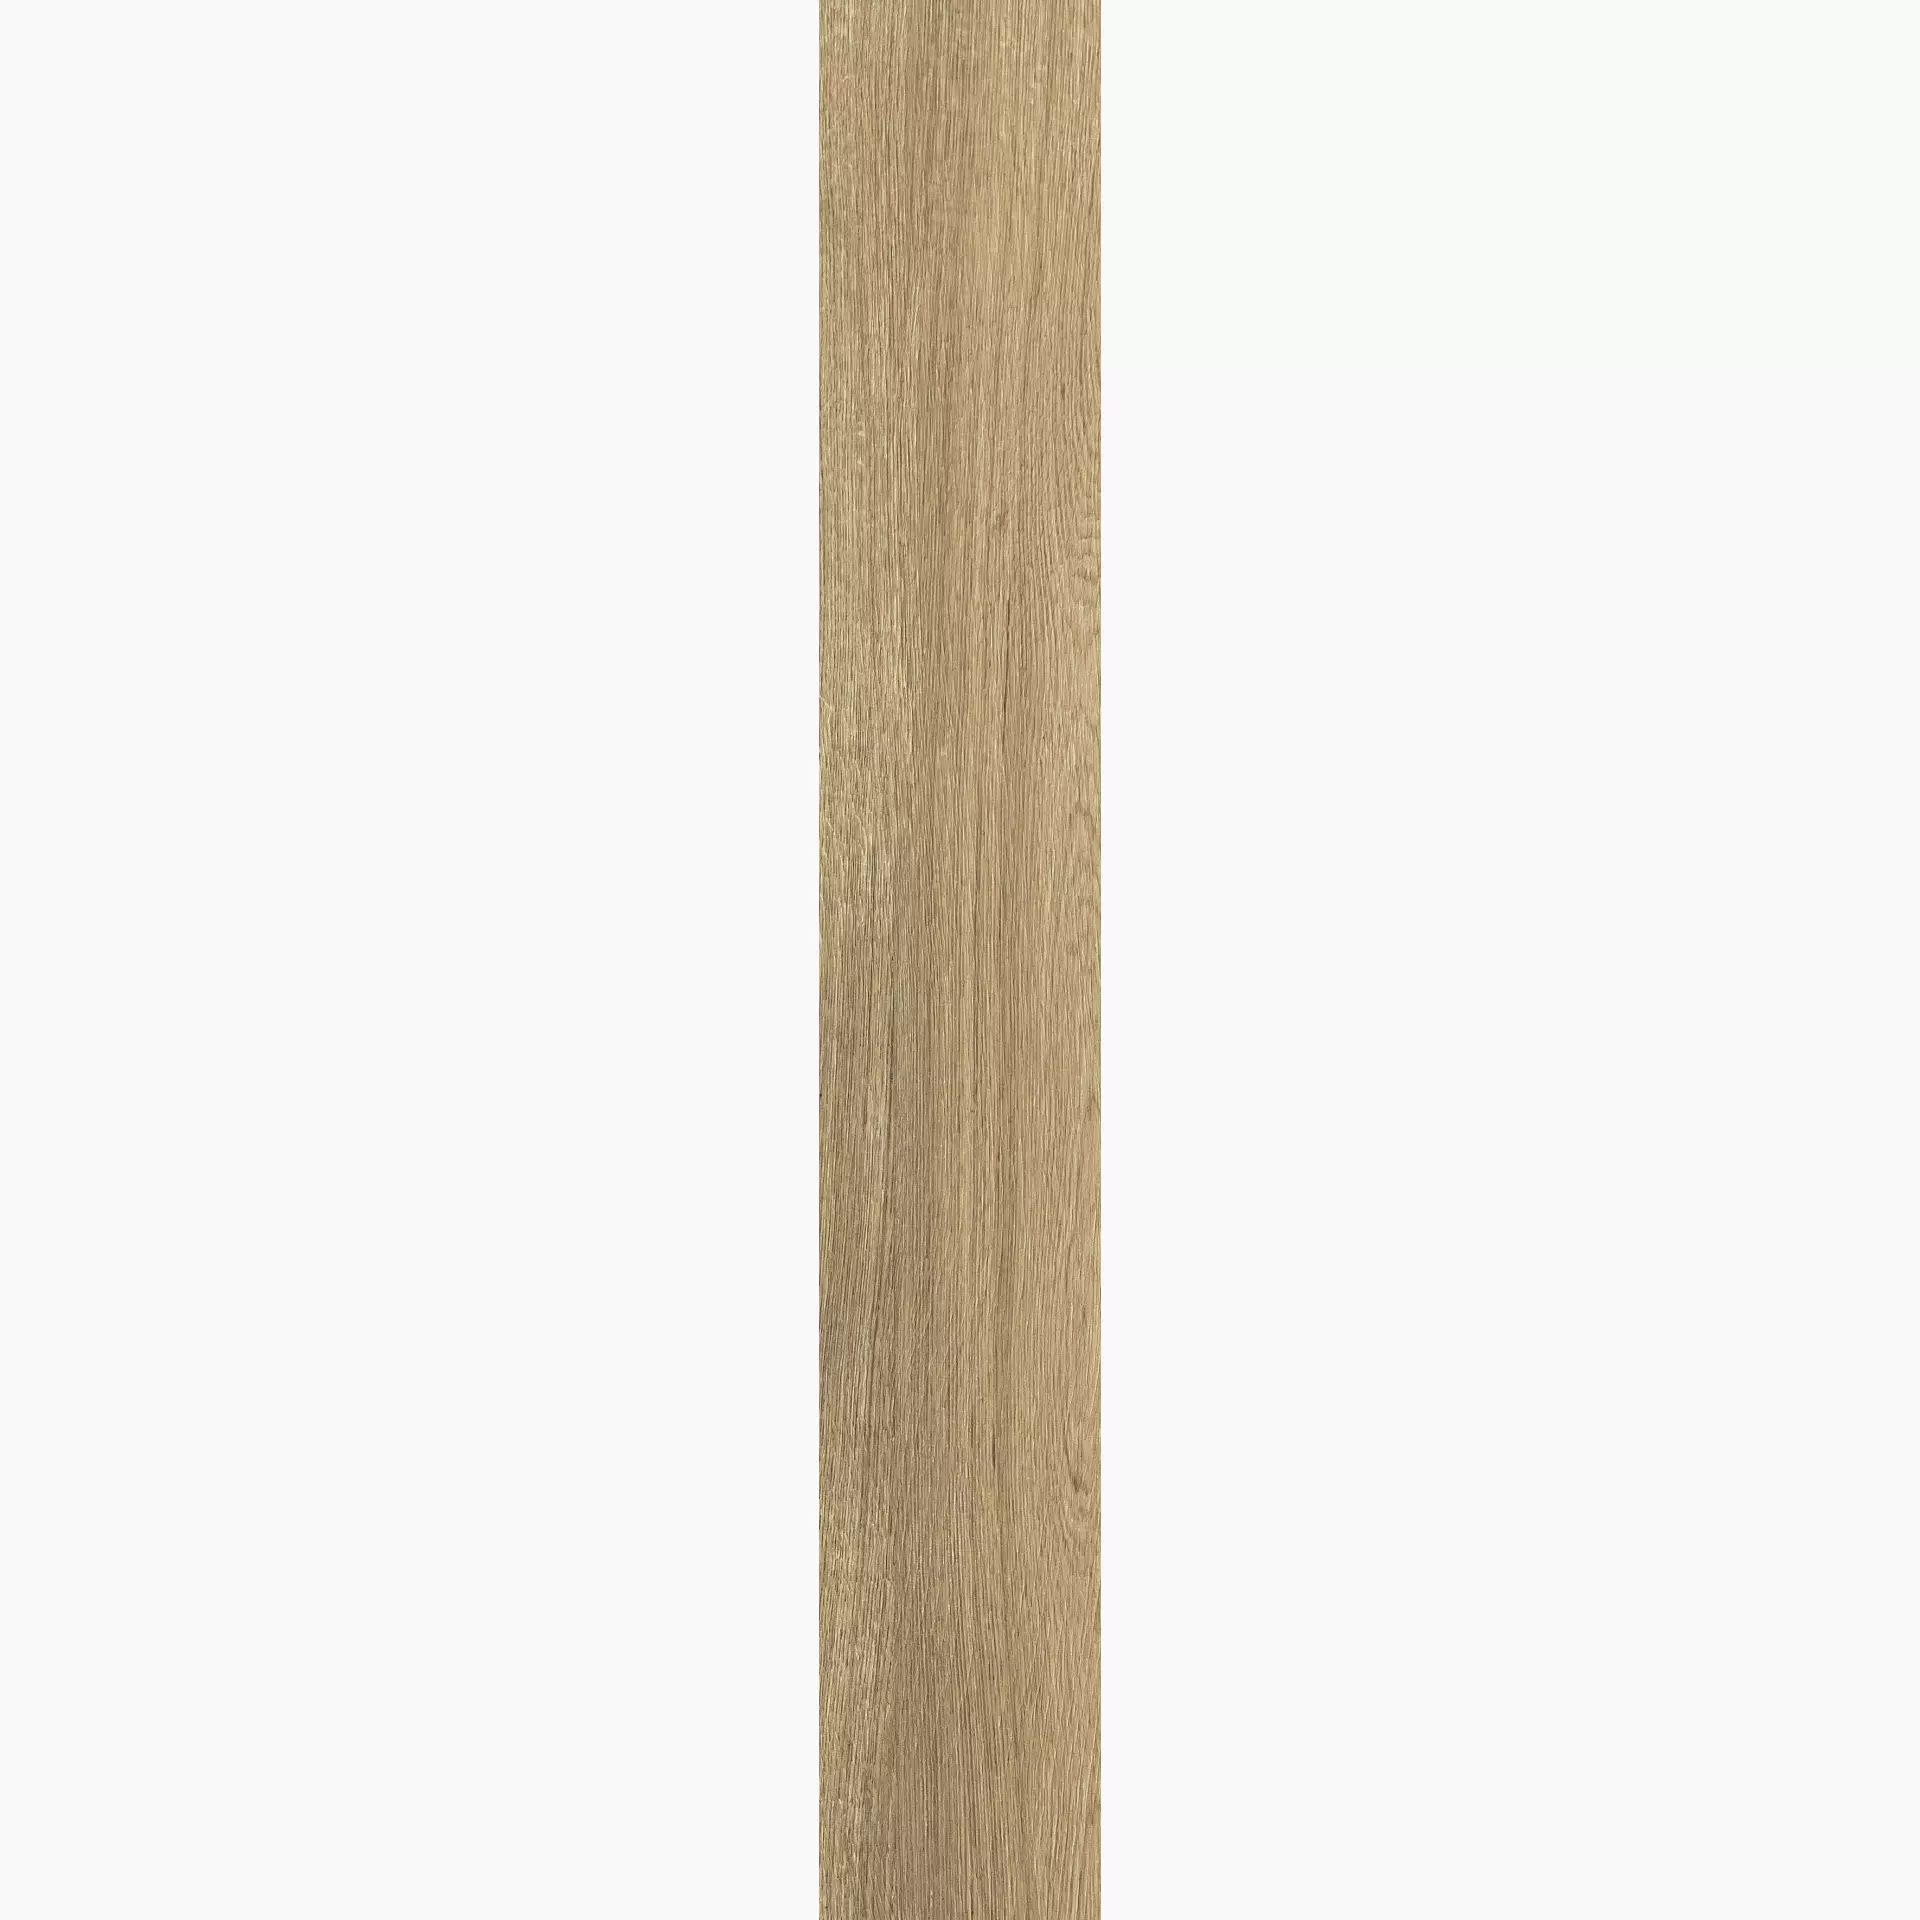 Florim Planches De Rex Noisette Naturale – Matt 755696 26,5x180cm rectified 9mm